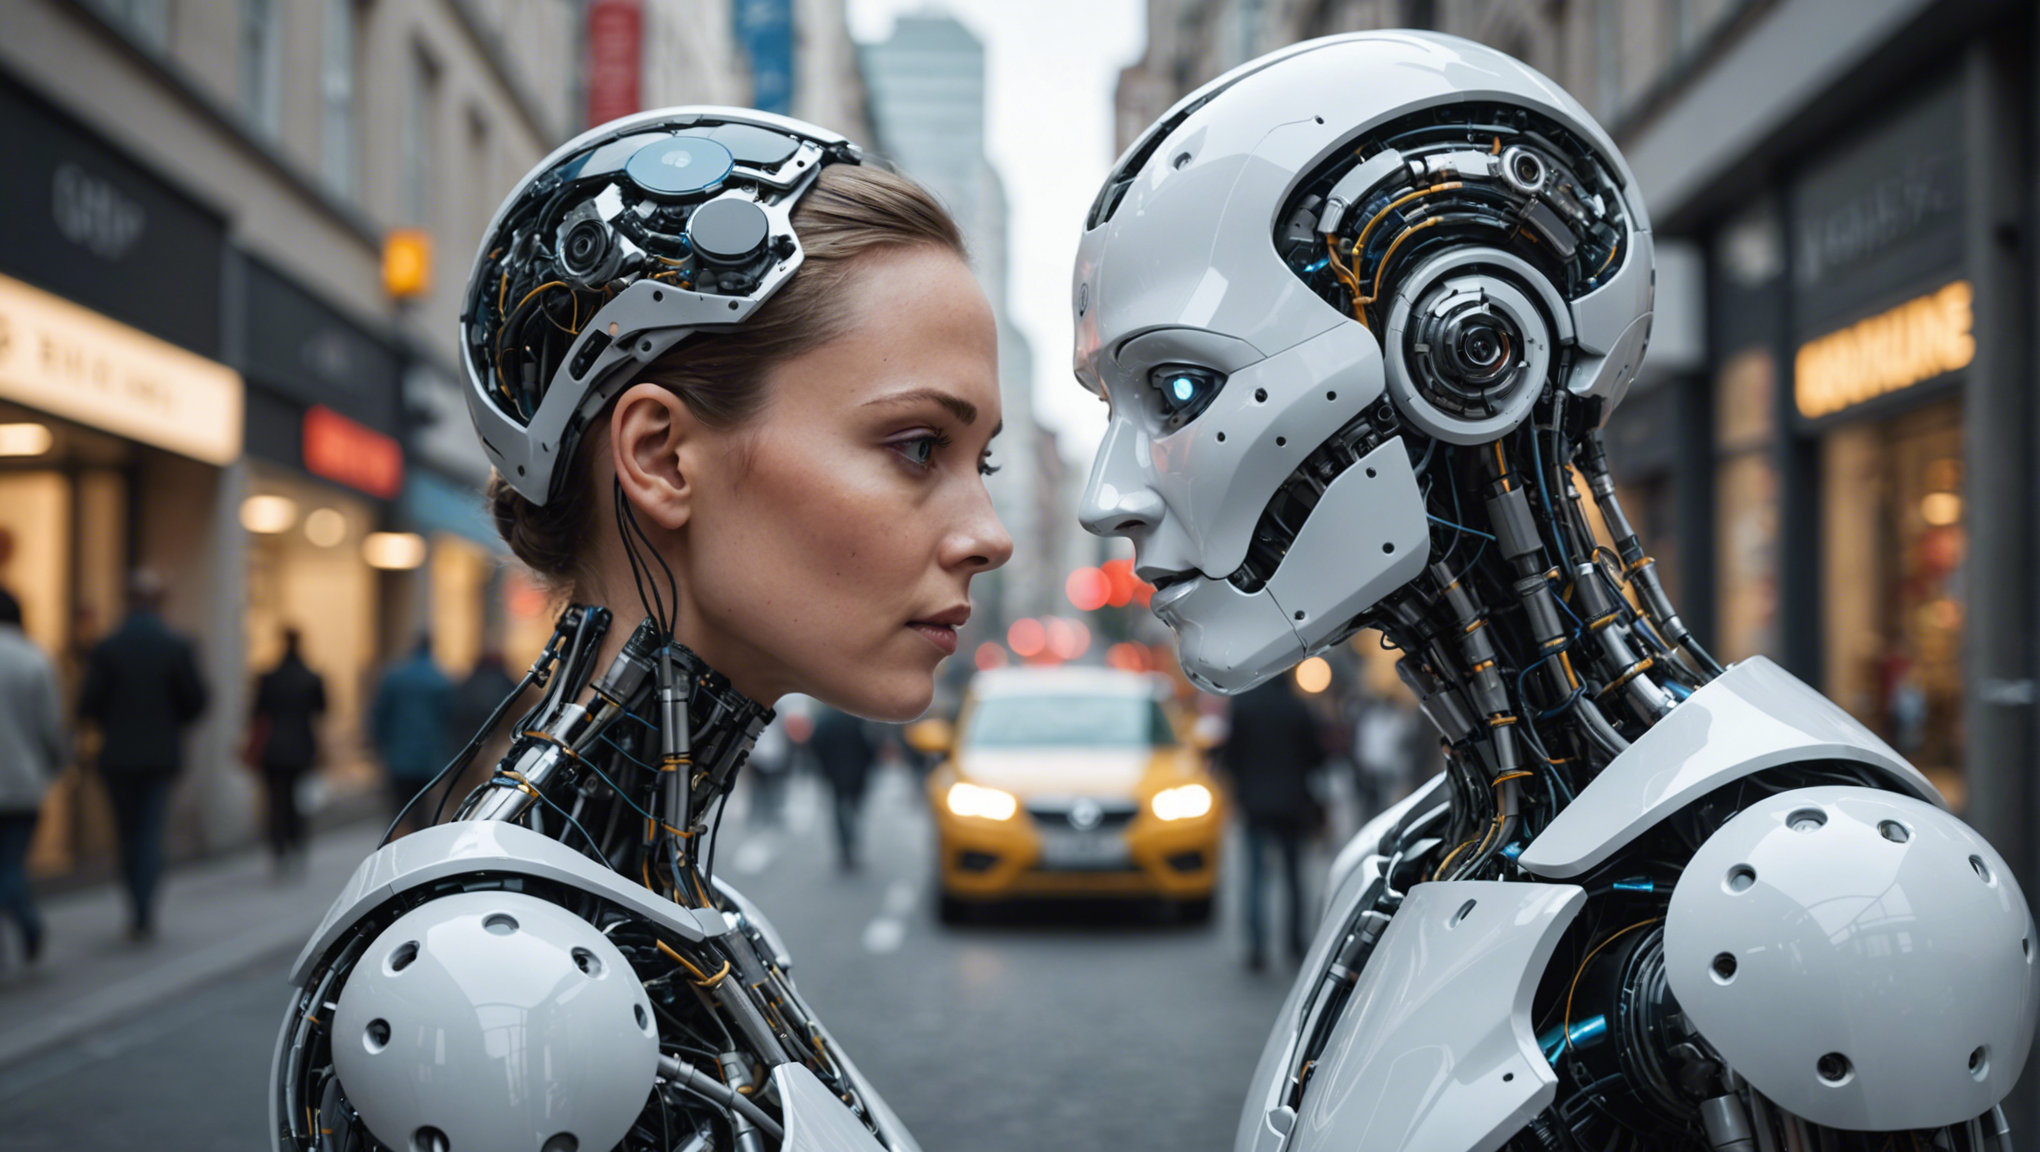 découvrez comment l'intelligence artificielle impacte notre vie quotidienne et ses diverses implications dans notre société moderne.